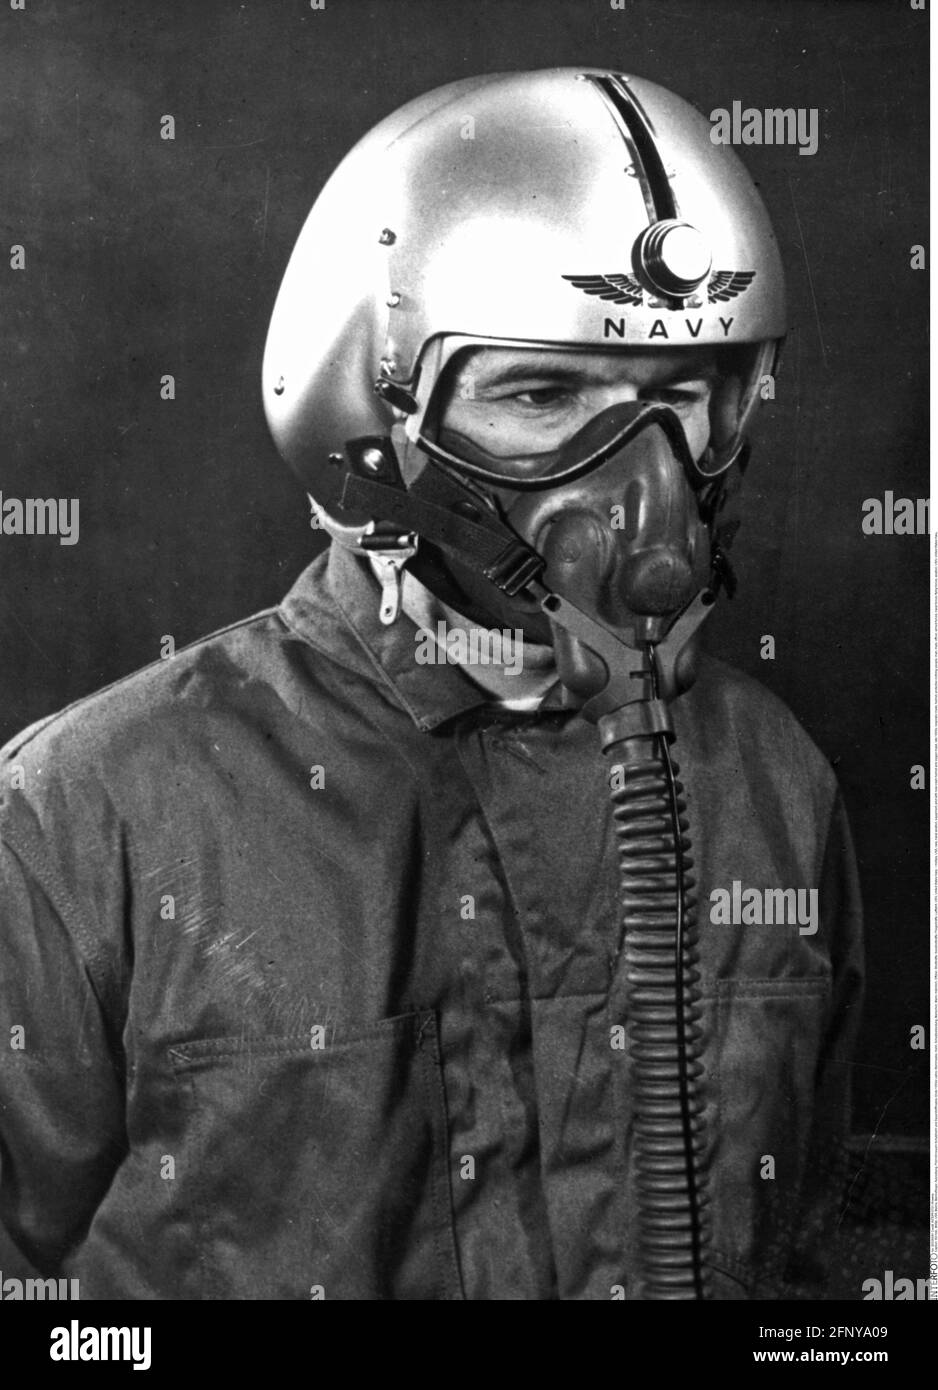 Militaire, Etats-Unis, marine, aviation navale, équipement, Pilote avec nouveau casque d'accident et masque à oxygène, DROITS supplémentaires-AUTORISATION-INFO-NON-DISPONIBLE Banque D'Images